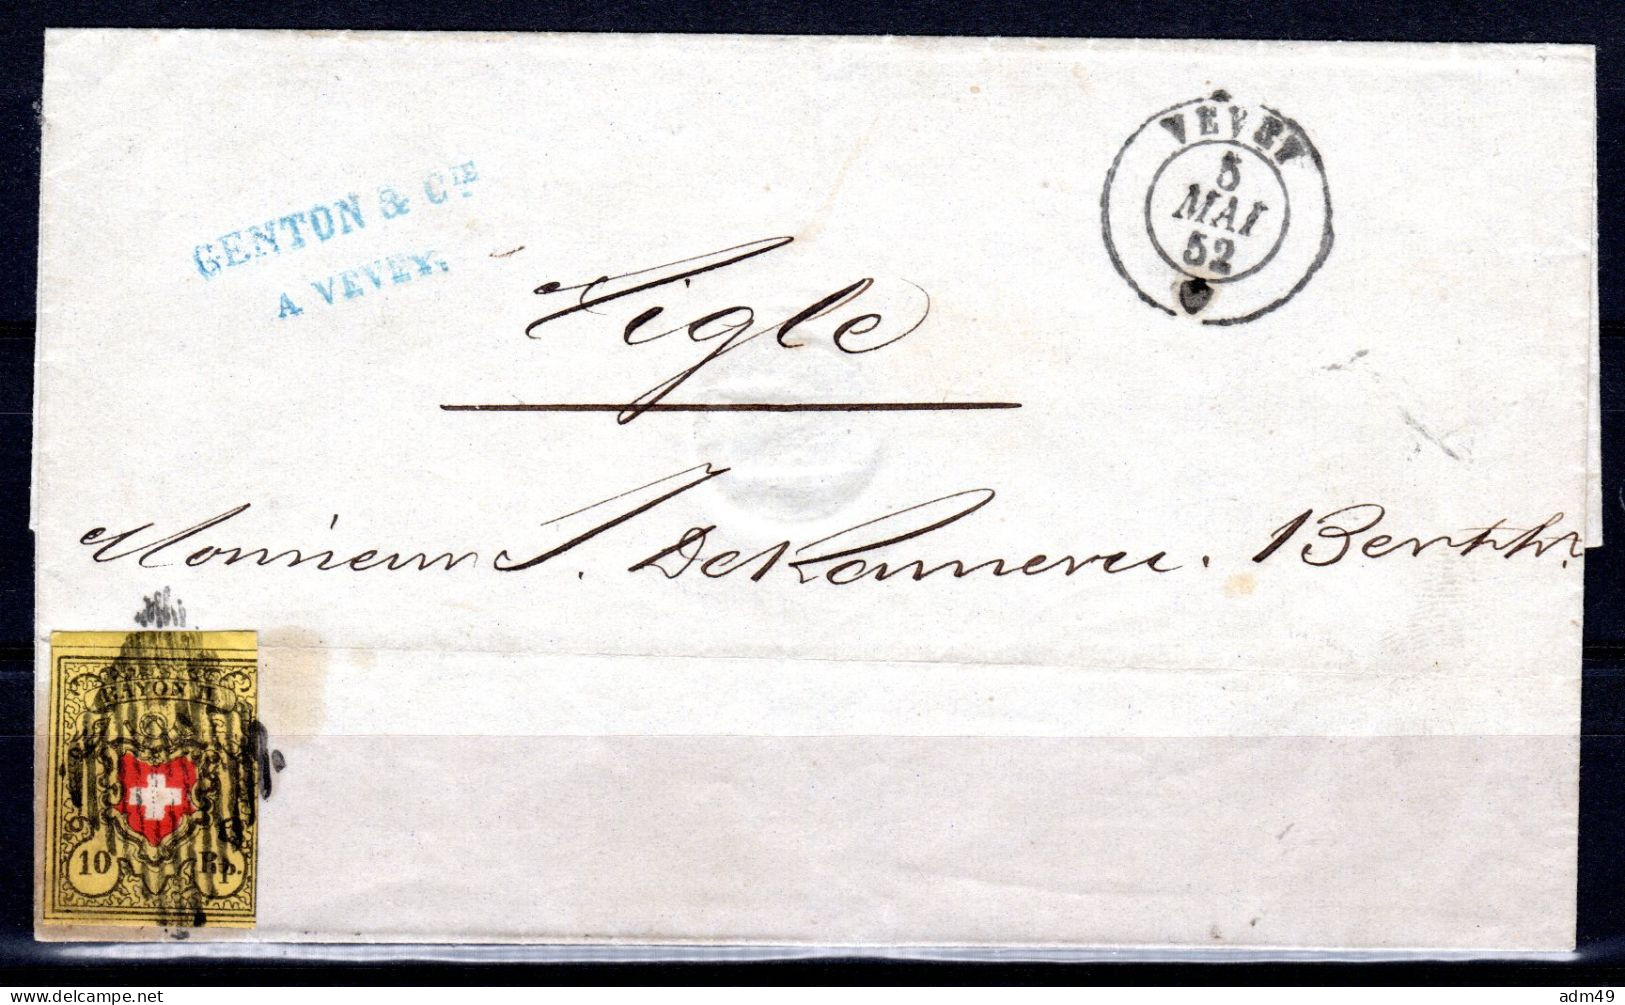 SCHWEIZ, 1850 Rayon II Gelb, Auf Brief - 1843-1852 Correos Federales Y Cantonales